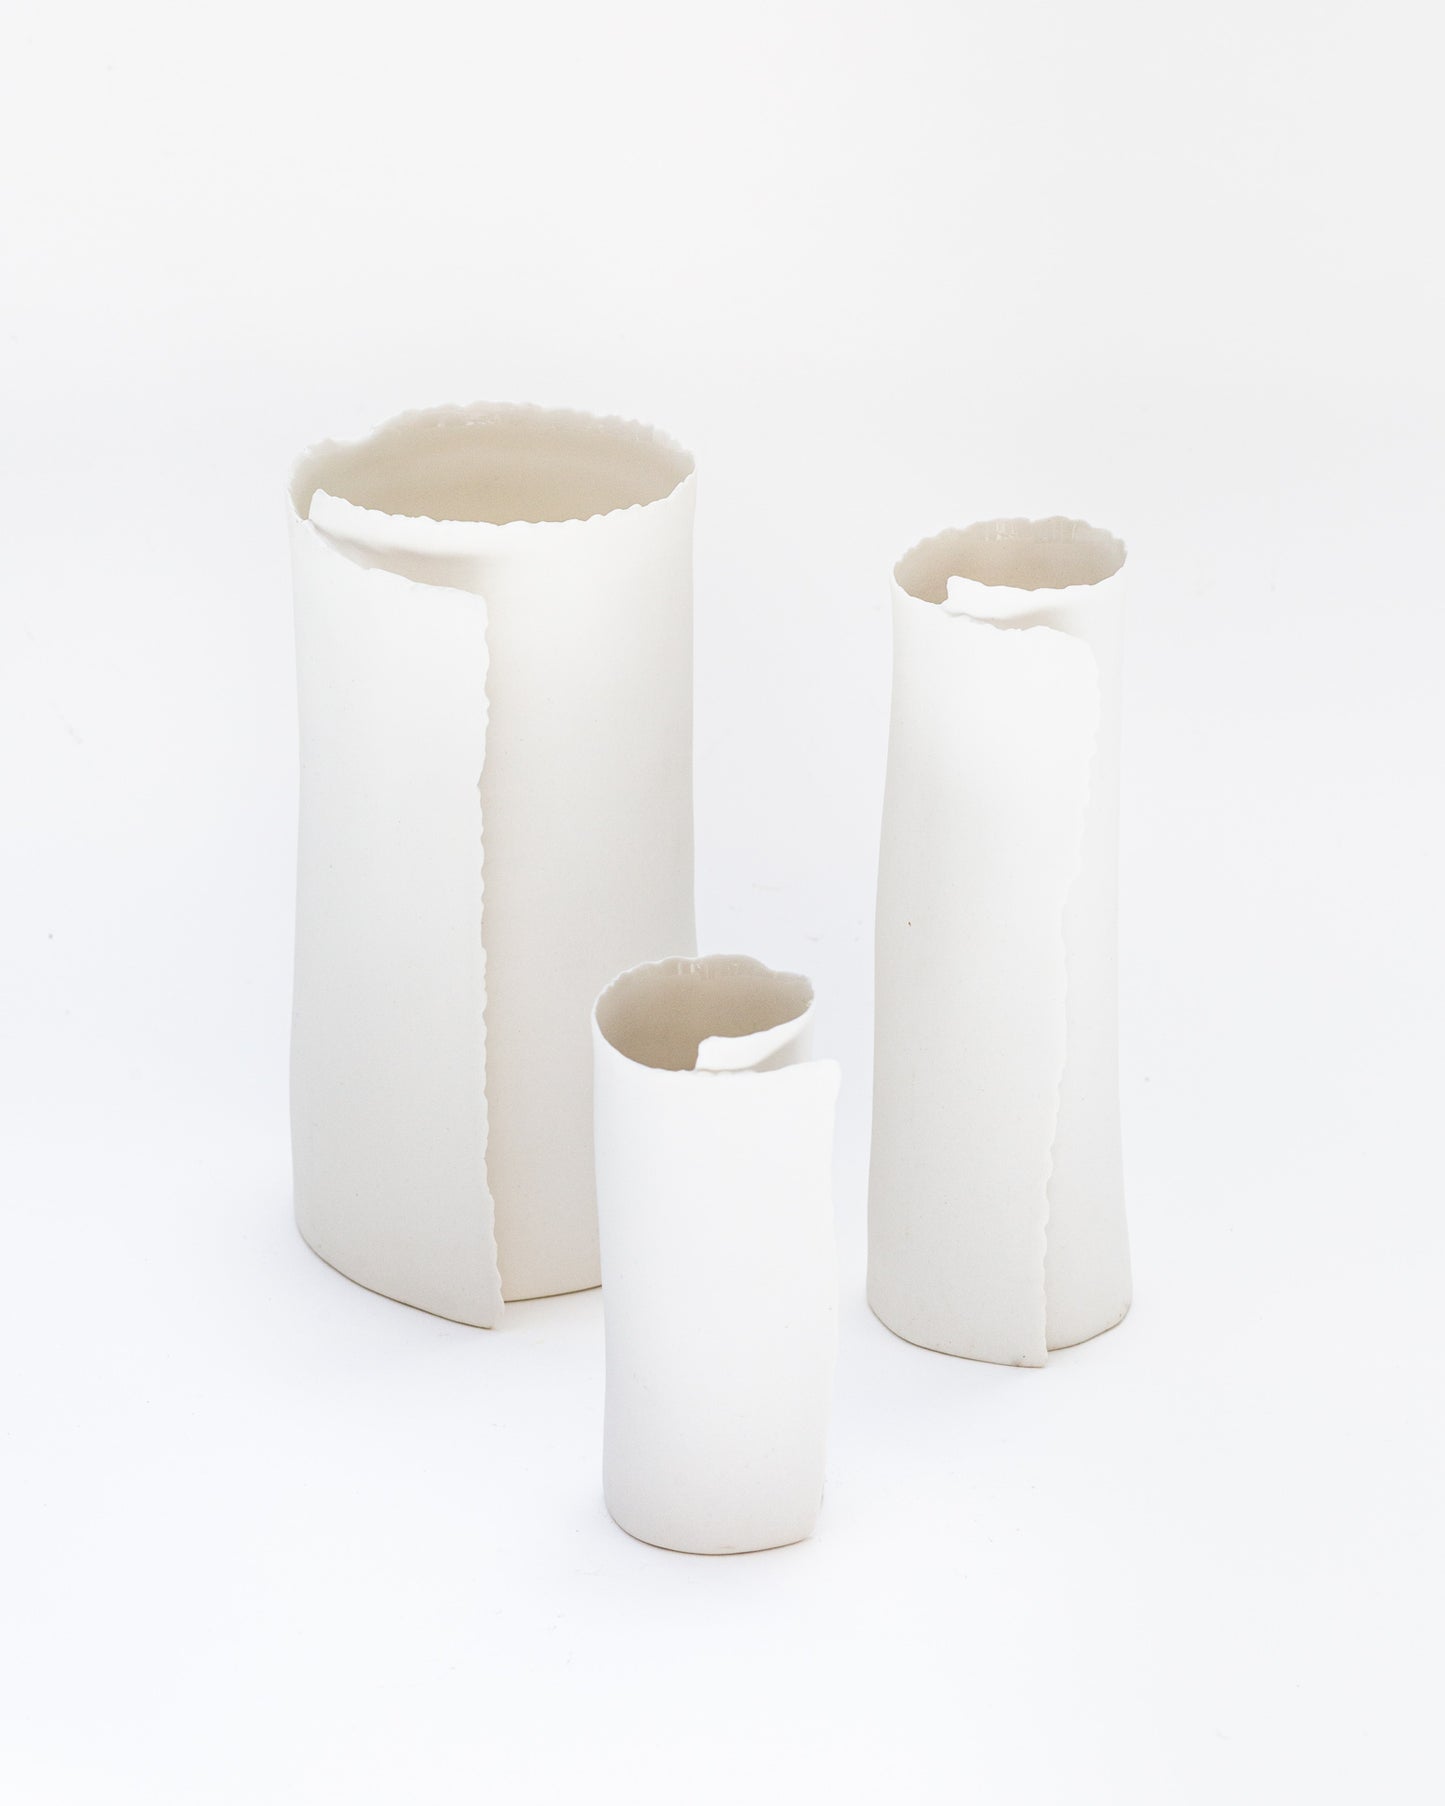 ARK 4 vase biscuit porcelain H=19cm, D=9,5cm